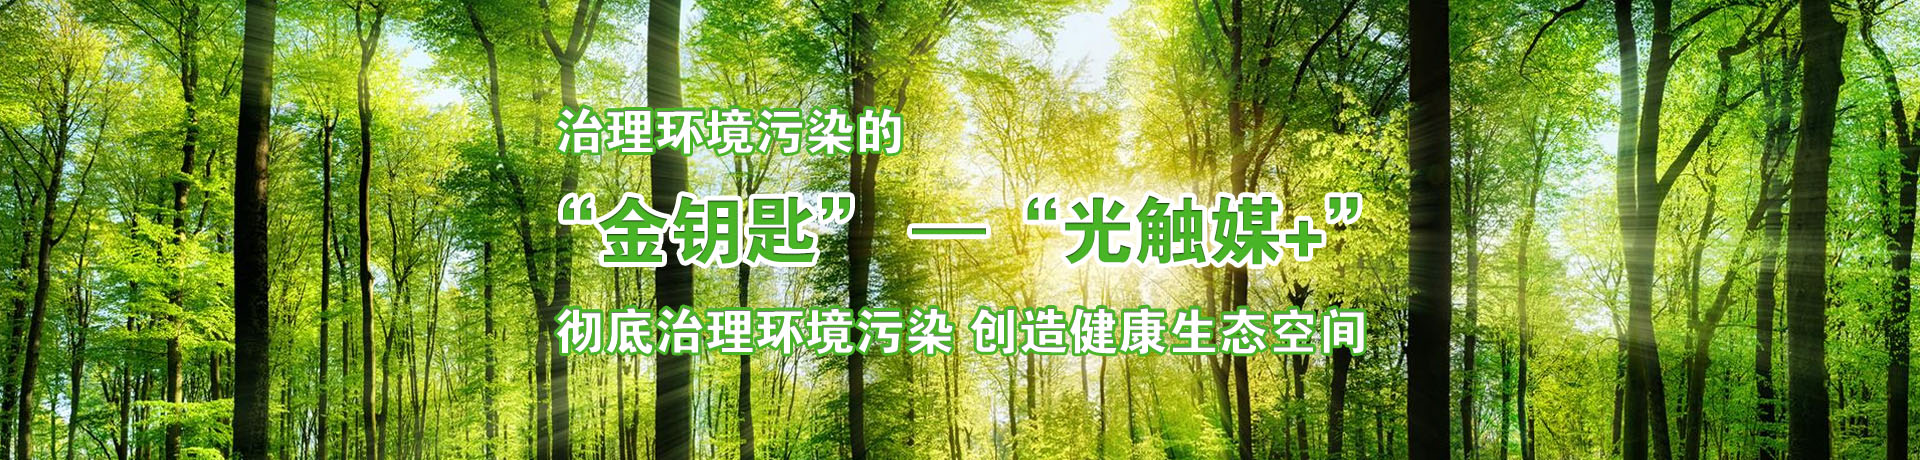 “光觸媒”革命性創新環保產物—鞍山市奇典公司--中國焦點